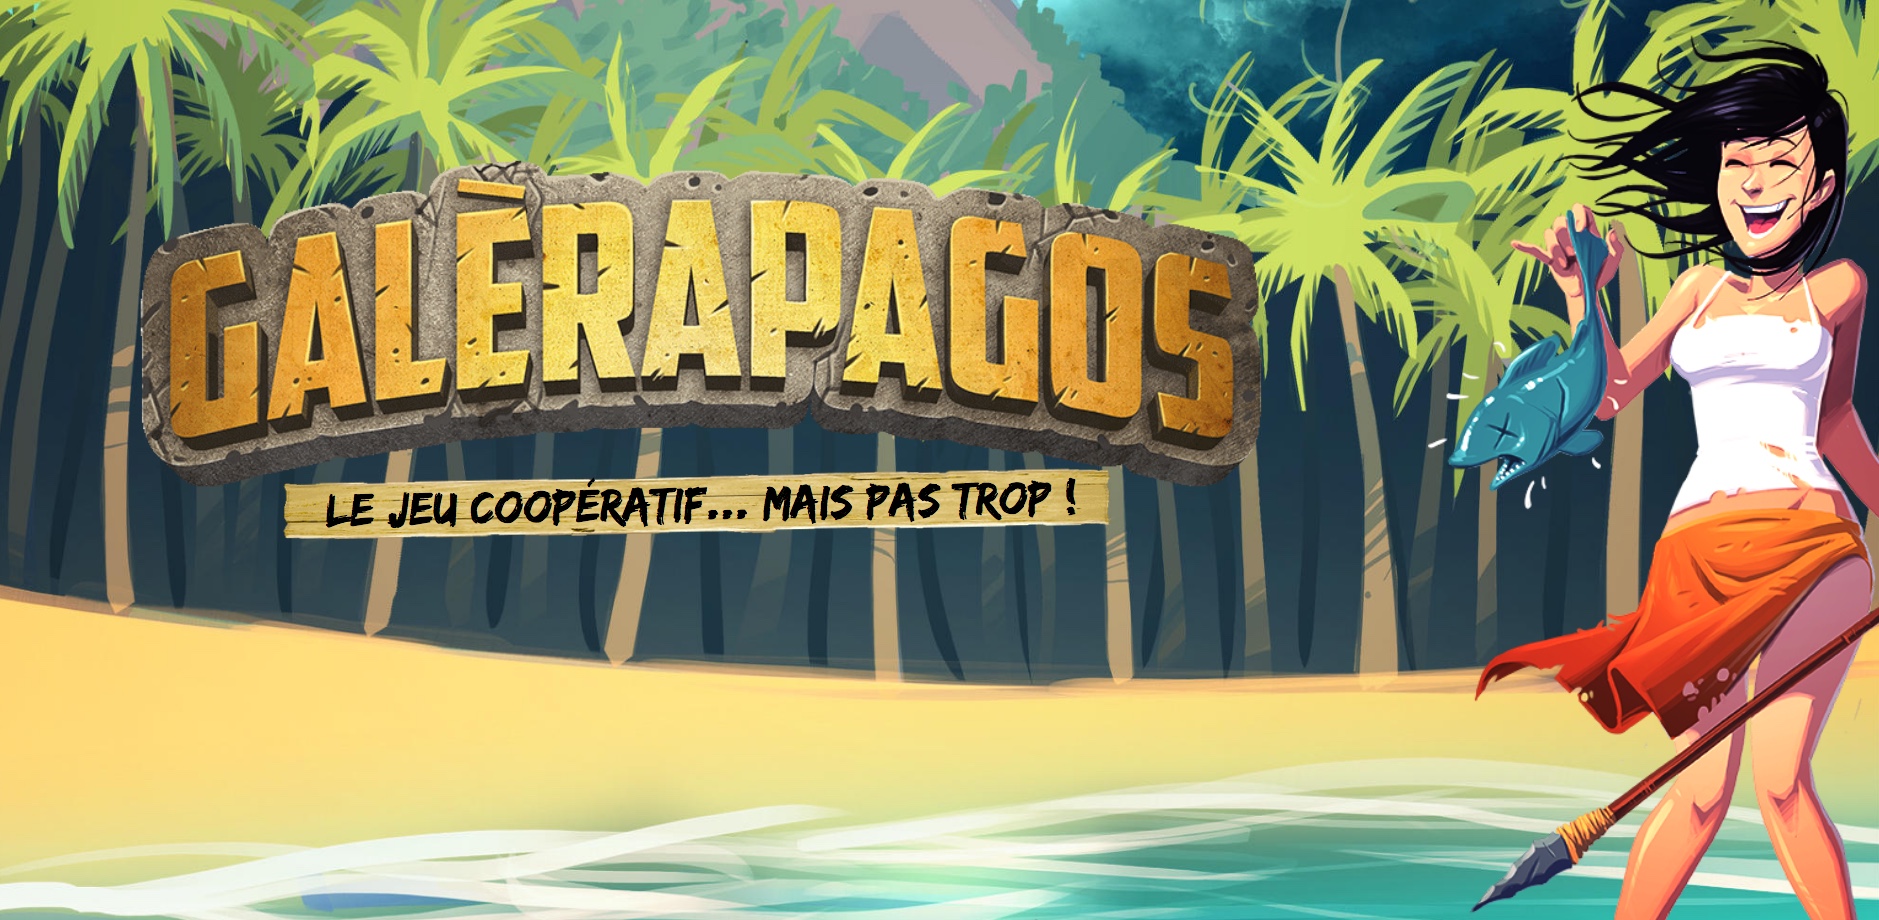 Galerapagos (FR) - Jeux de société Ludold